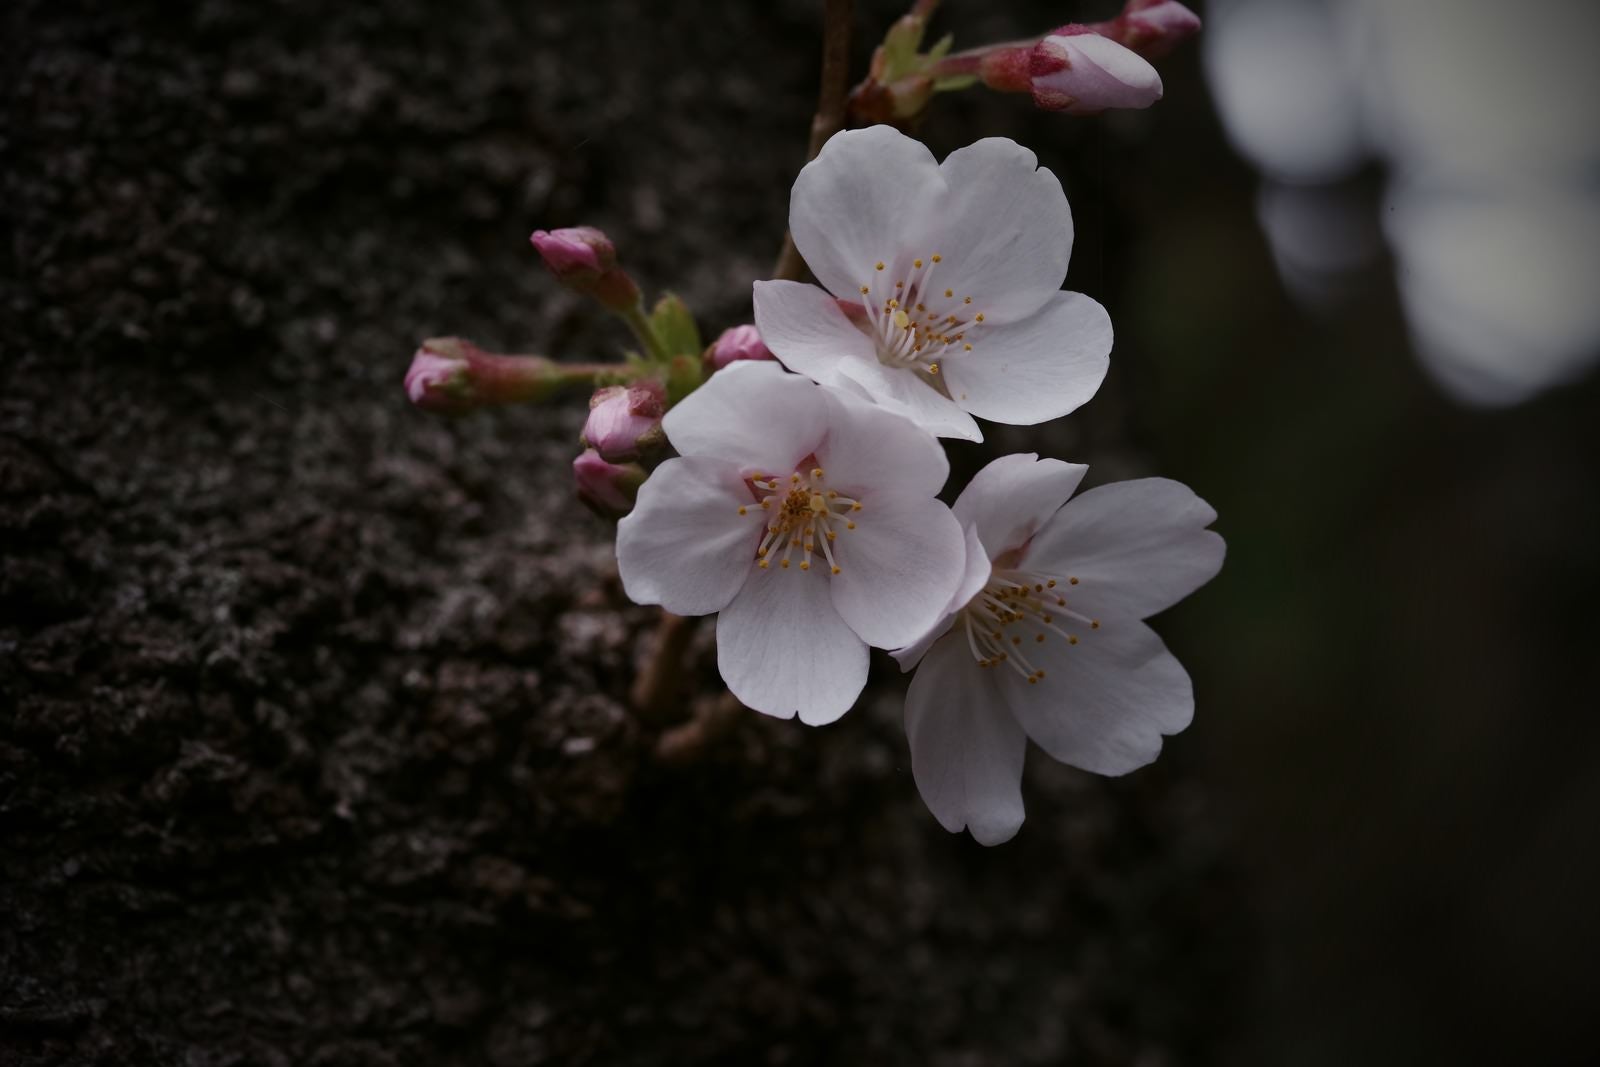 「開花しはじめた桜」の写真